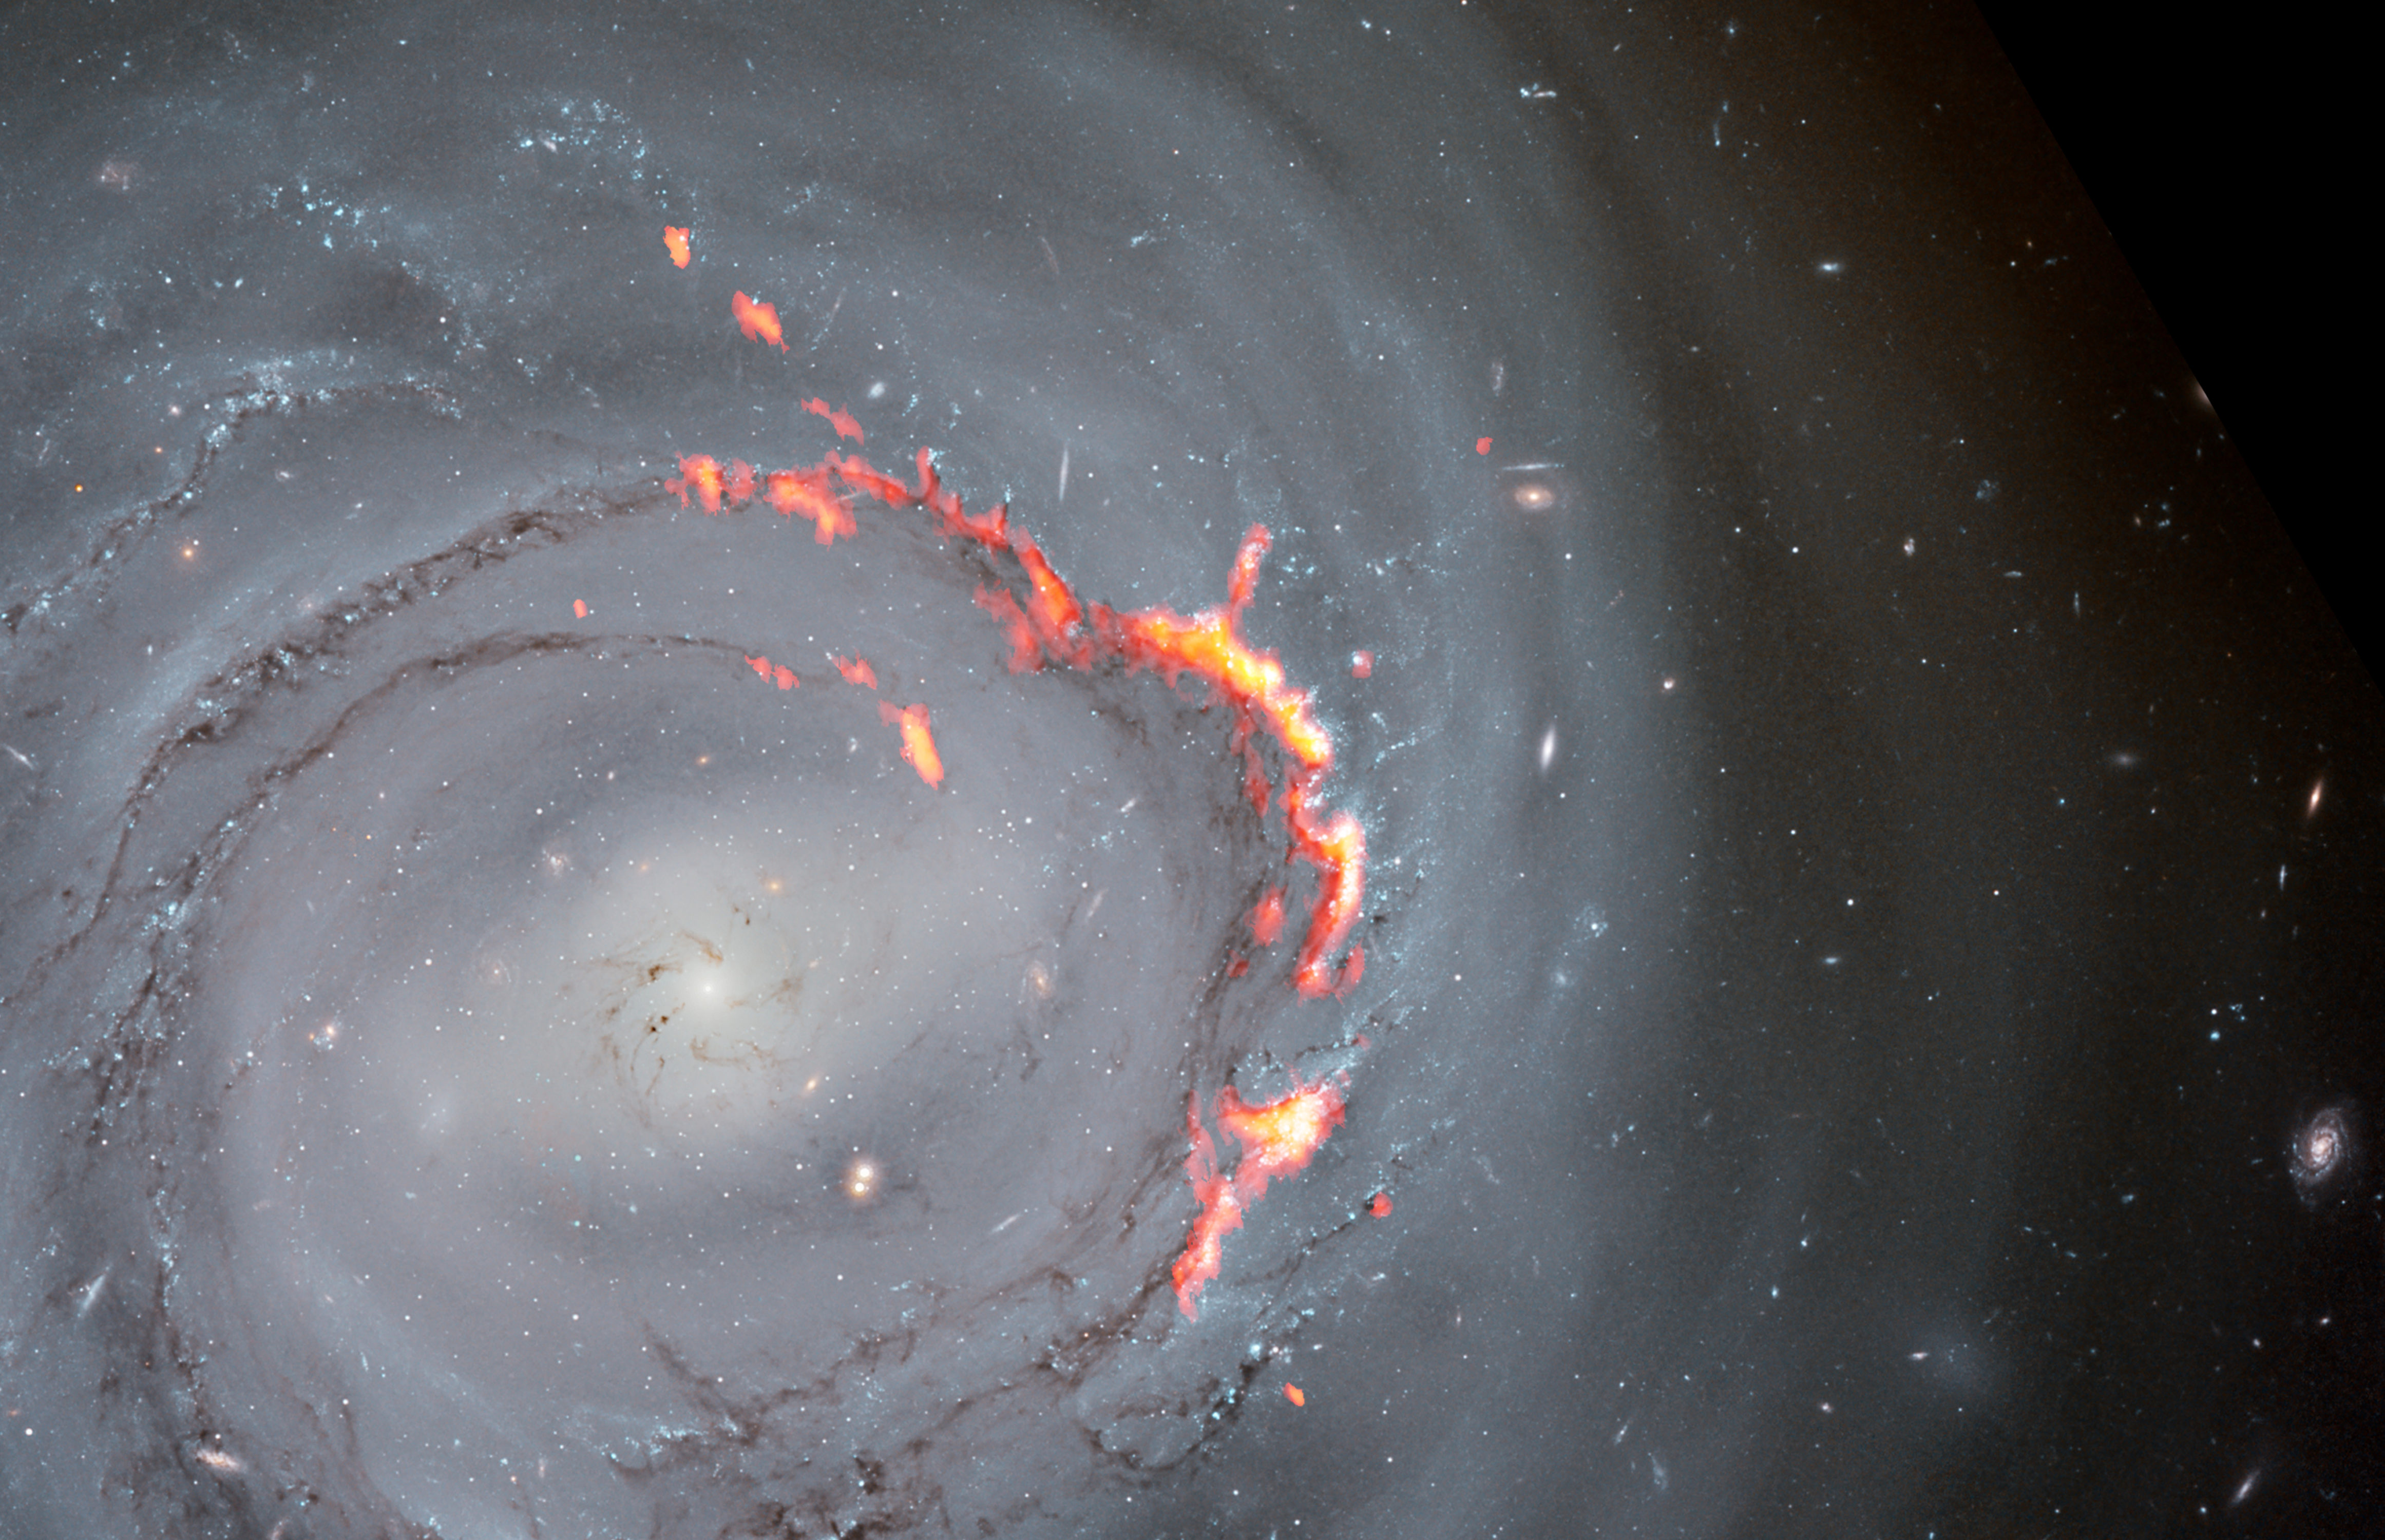 Acercamiento de una imagen compuesta de NGC 4921 obtenida por ALMA (rojo y naranja) y el telescopio espacial Hubble (imagen óptica). En esta imagen se destacan las estructuras filamentosas causadas por el fenómeno de despojo por presión. Se trata de un proceso que desplaza el gas de una galaxia, despojándola del material necesario para formar nuevas estrellas. Según un nuevo estudio, en vez de ser expulsado de la galaxia, parte de ese material podría verse sometido a un proceso de reacreción, posiblemente por efecto de campos magnéticos, lo cual ralentizaría la extinción de la galaxia. Créditos: ALMA (ESO/NAOJ/NRAO)/S. Dagnello (NRAO), NASA/ESA/Hubble, K. Cook (LLNL), L. Shatz